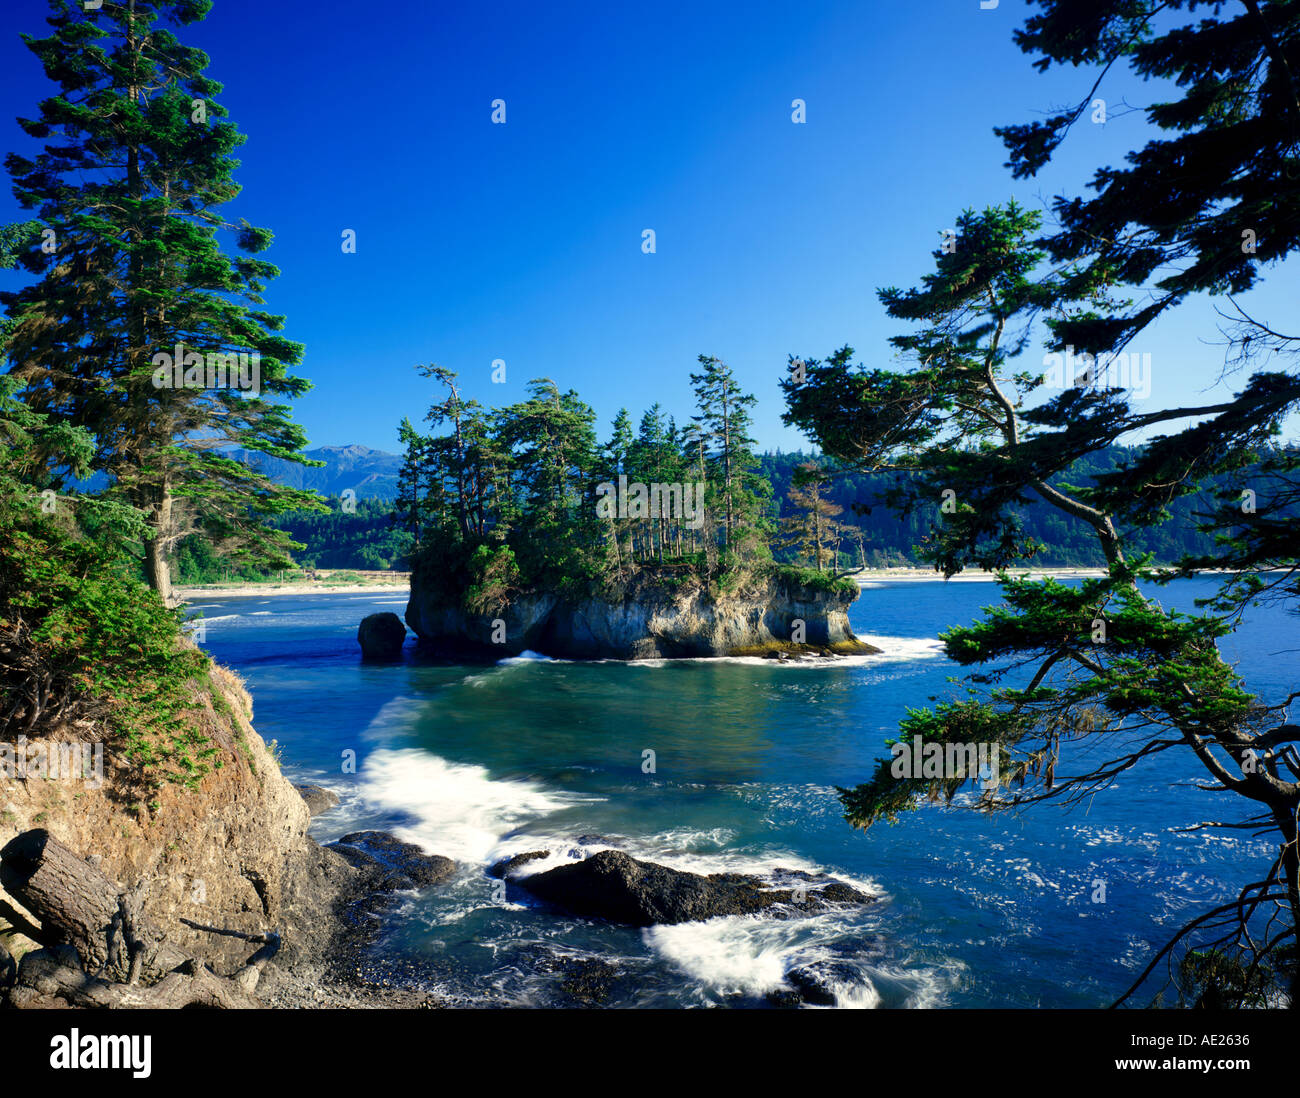 Spiaggia a mezzaluna, nello Stato di Washington, Stati Uniti d'America Foto Stock